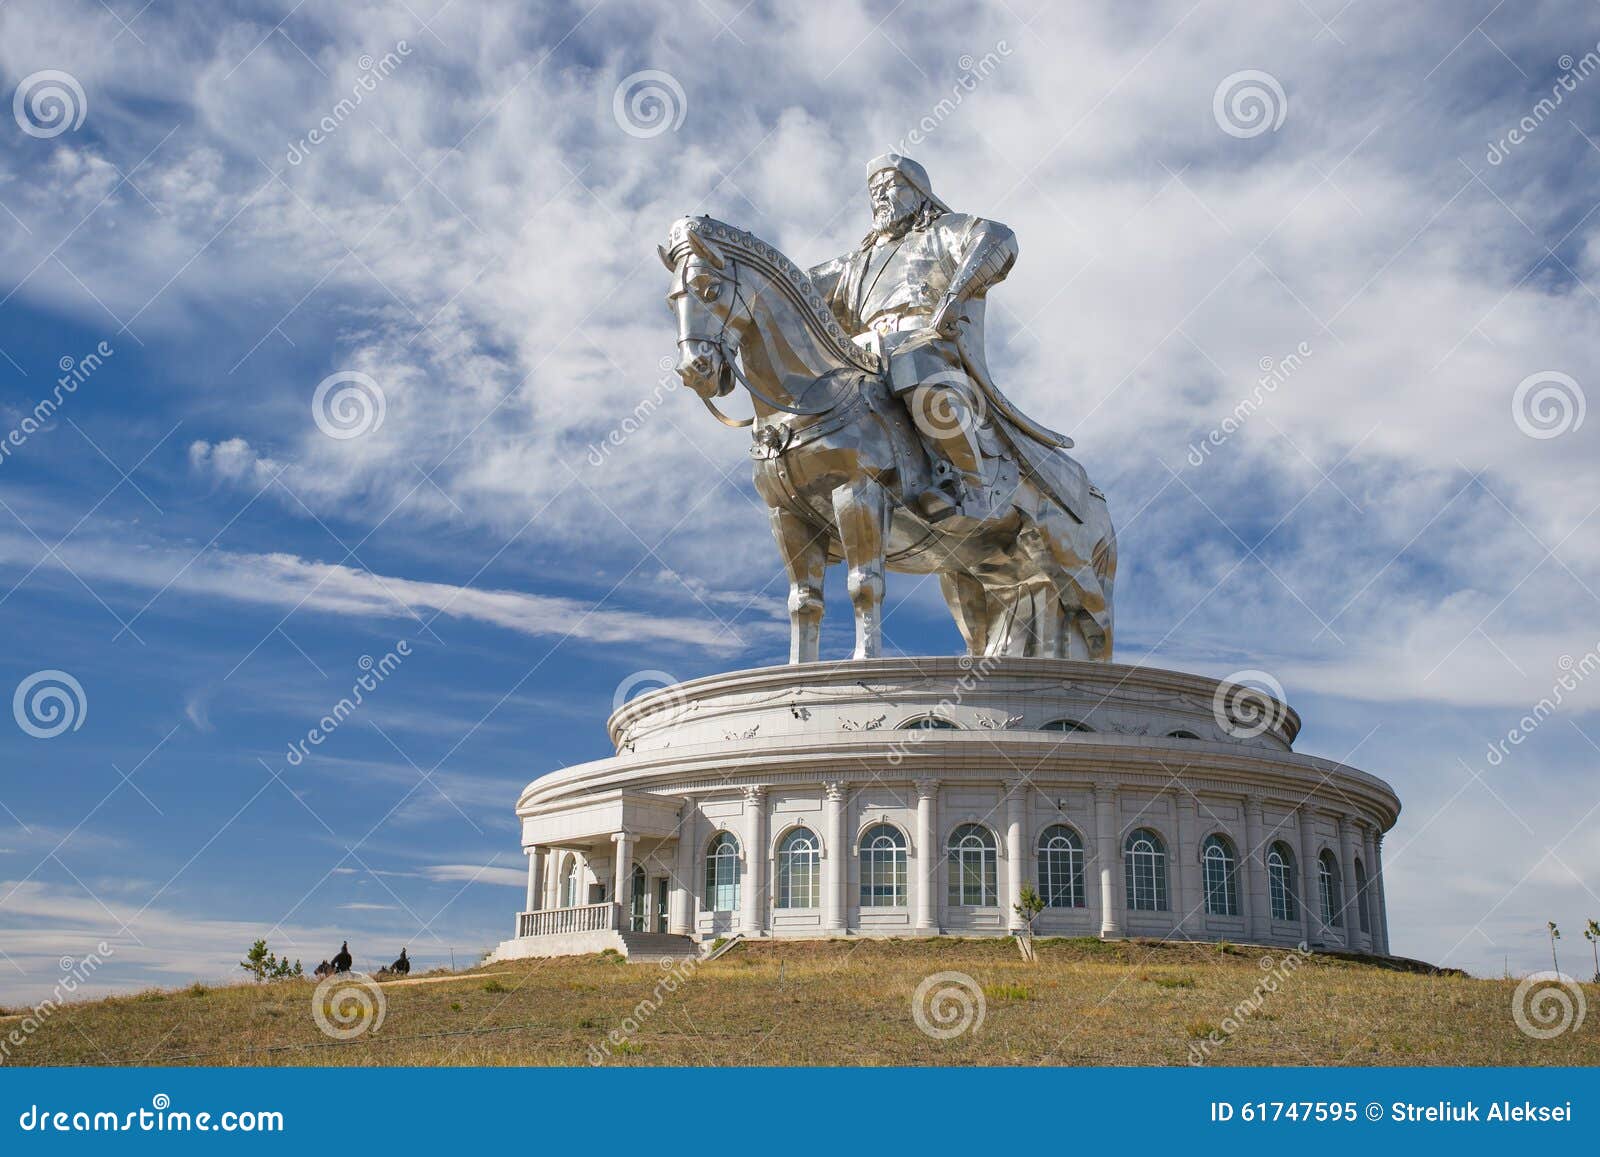 La Plus Grande Statue Du Monde De Genghis Khan Image Stock Image Du Mongolie Cityscape 61747595